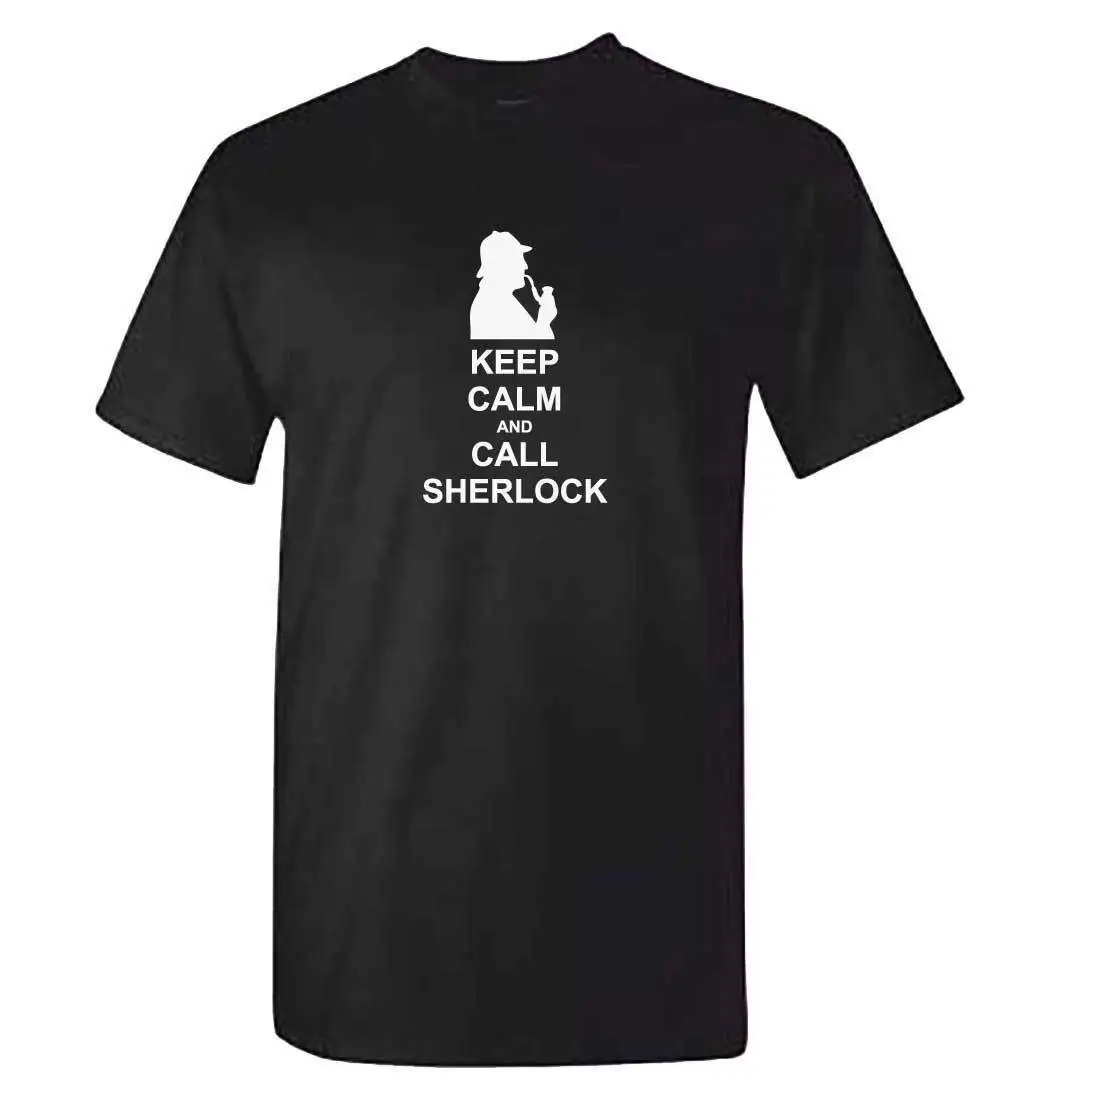 Футболка Шерлок-Шерлок Холмс домами, футболка из 100% хлопка, топы, оптовая продажа